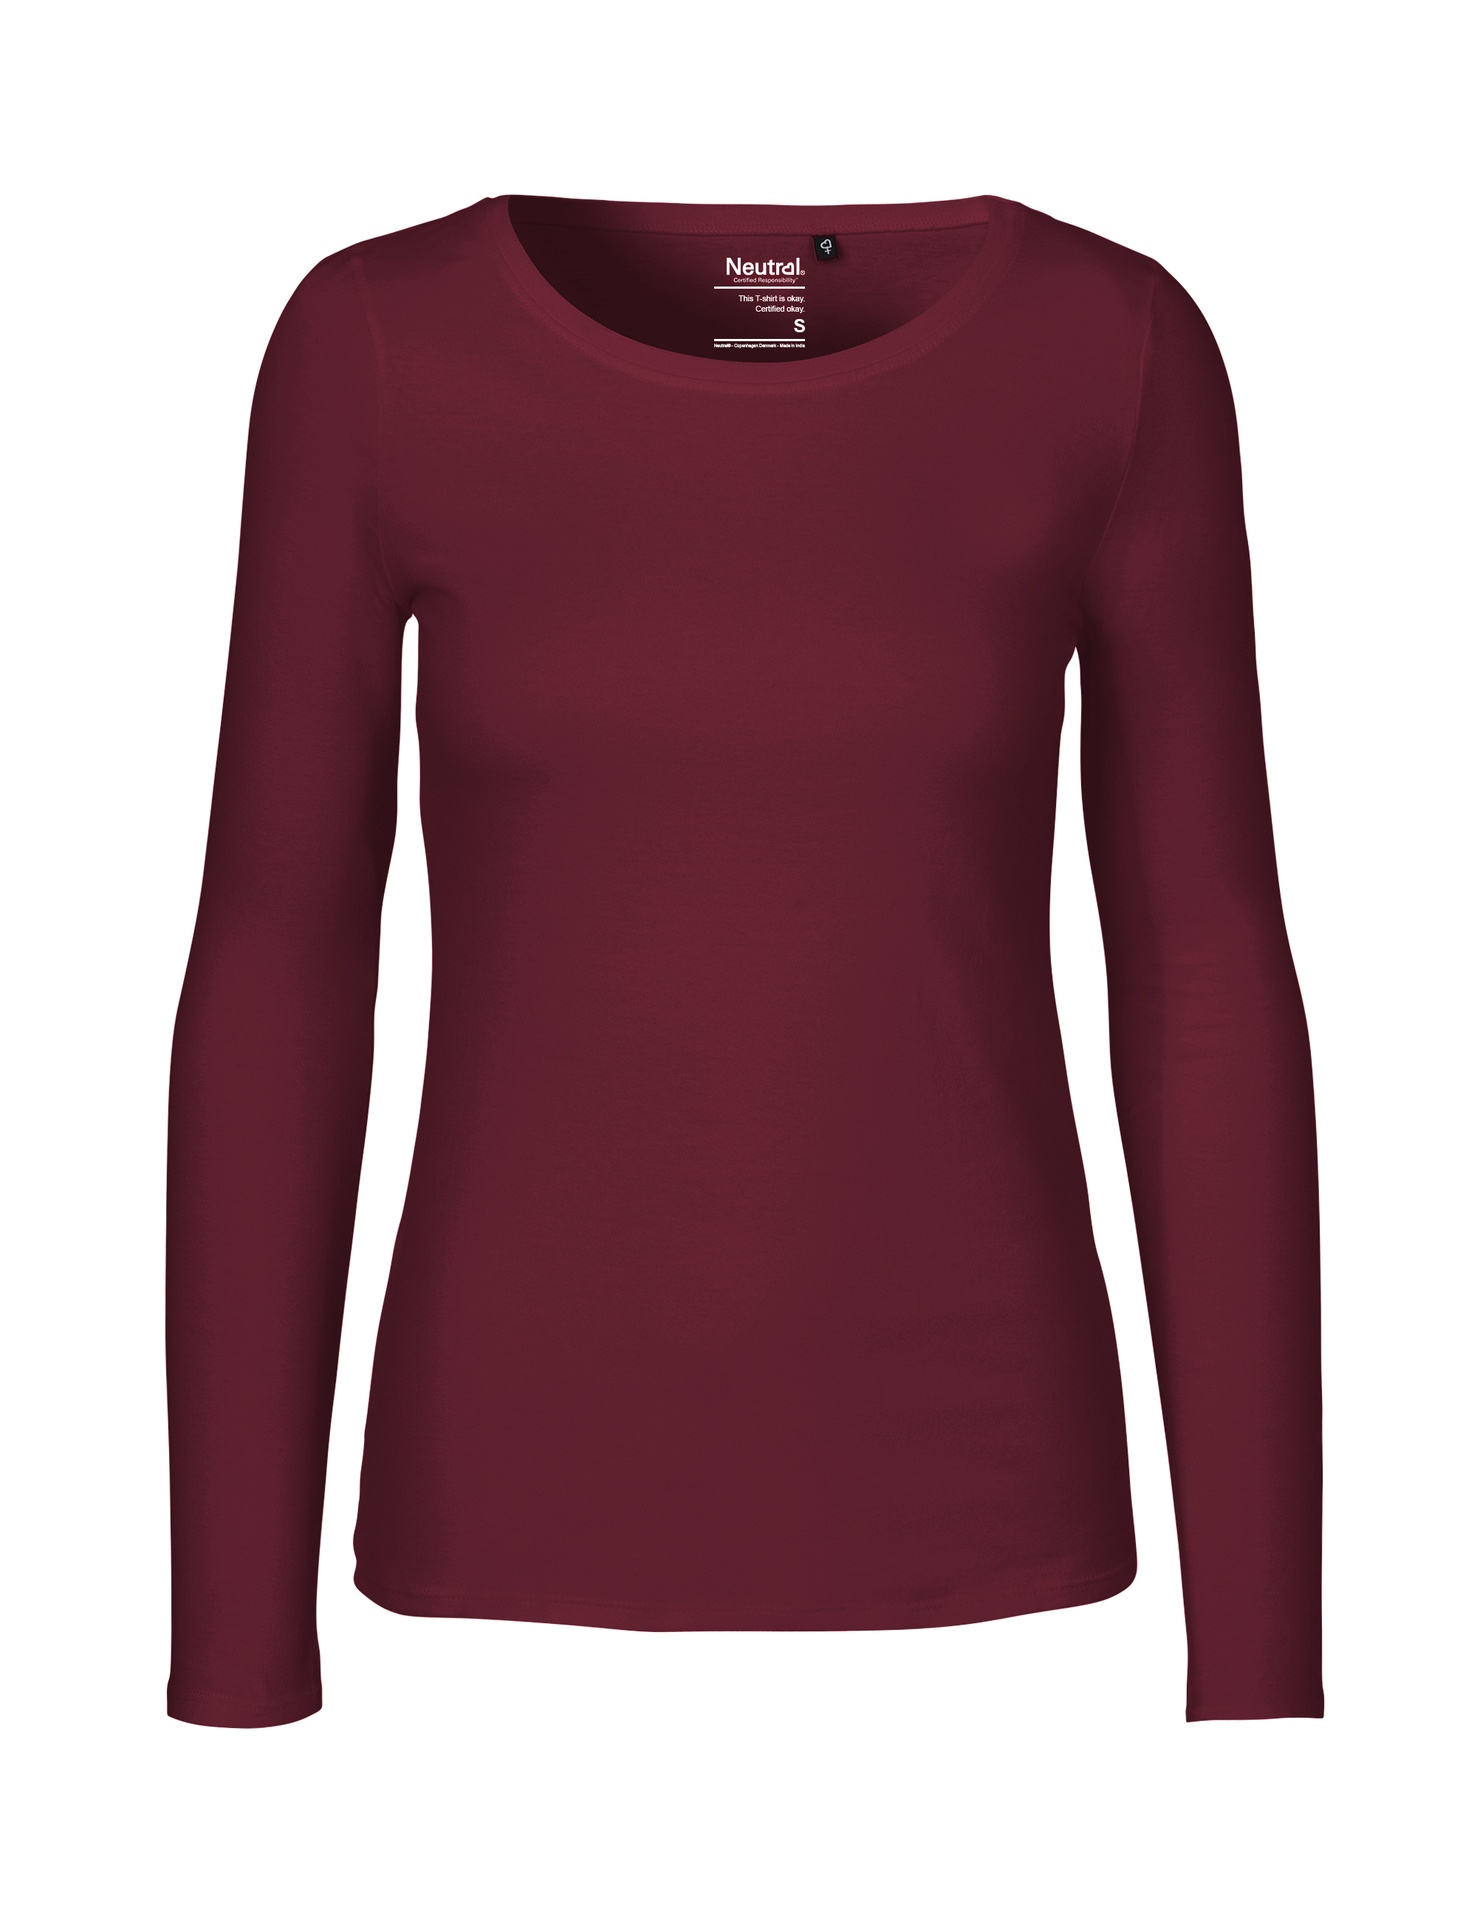 [PR/04708] Ladies Long Sleeve T-Shirt (Bordeaux 26, L)